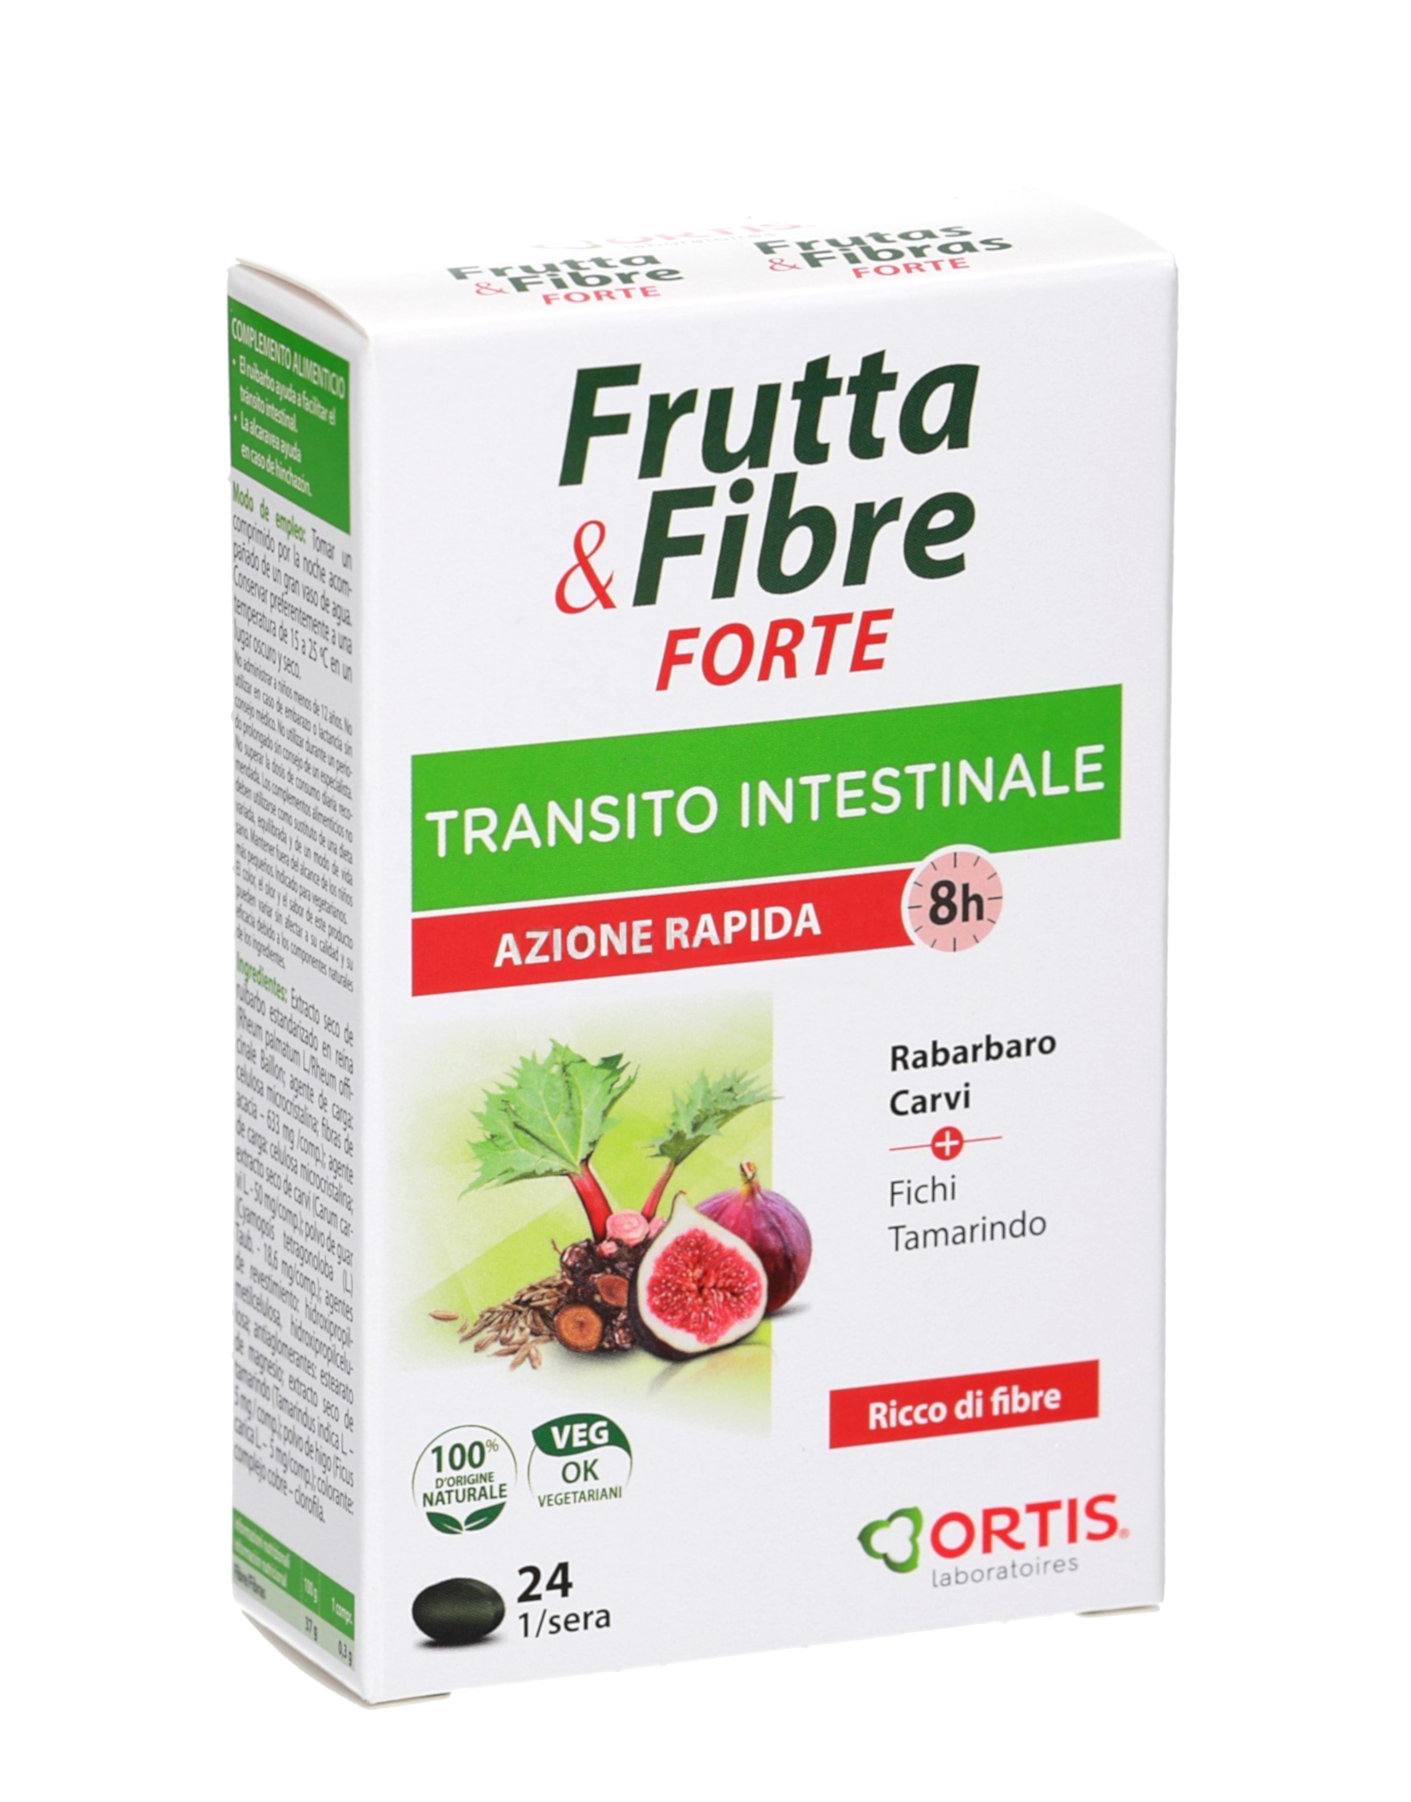 Ortis - Frutta & Fibre Forte di Cabassi & giuriati, 24 compresse 